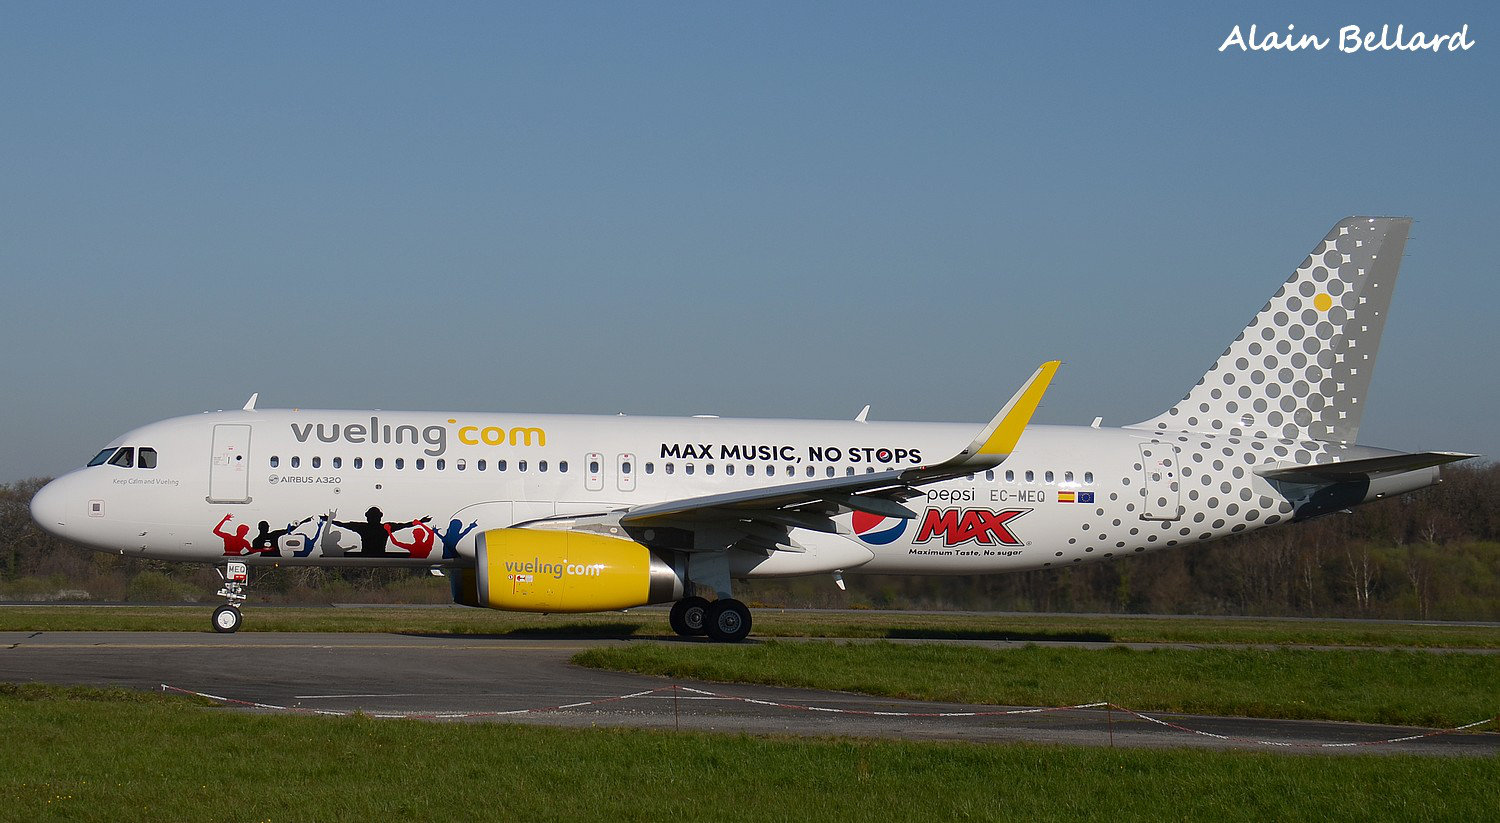 [06/04/2015] Airbus A320 (EC-MEQ) Vueling: Pepsi Max 4pjn